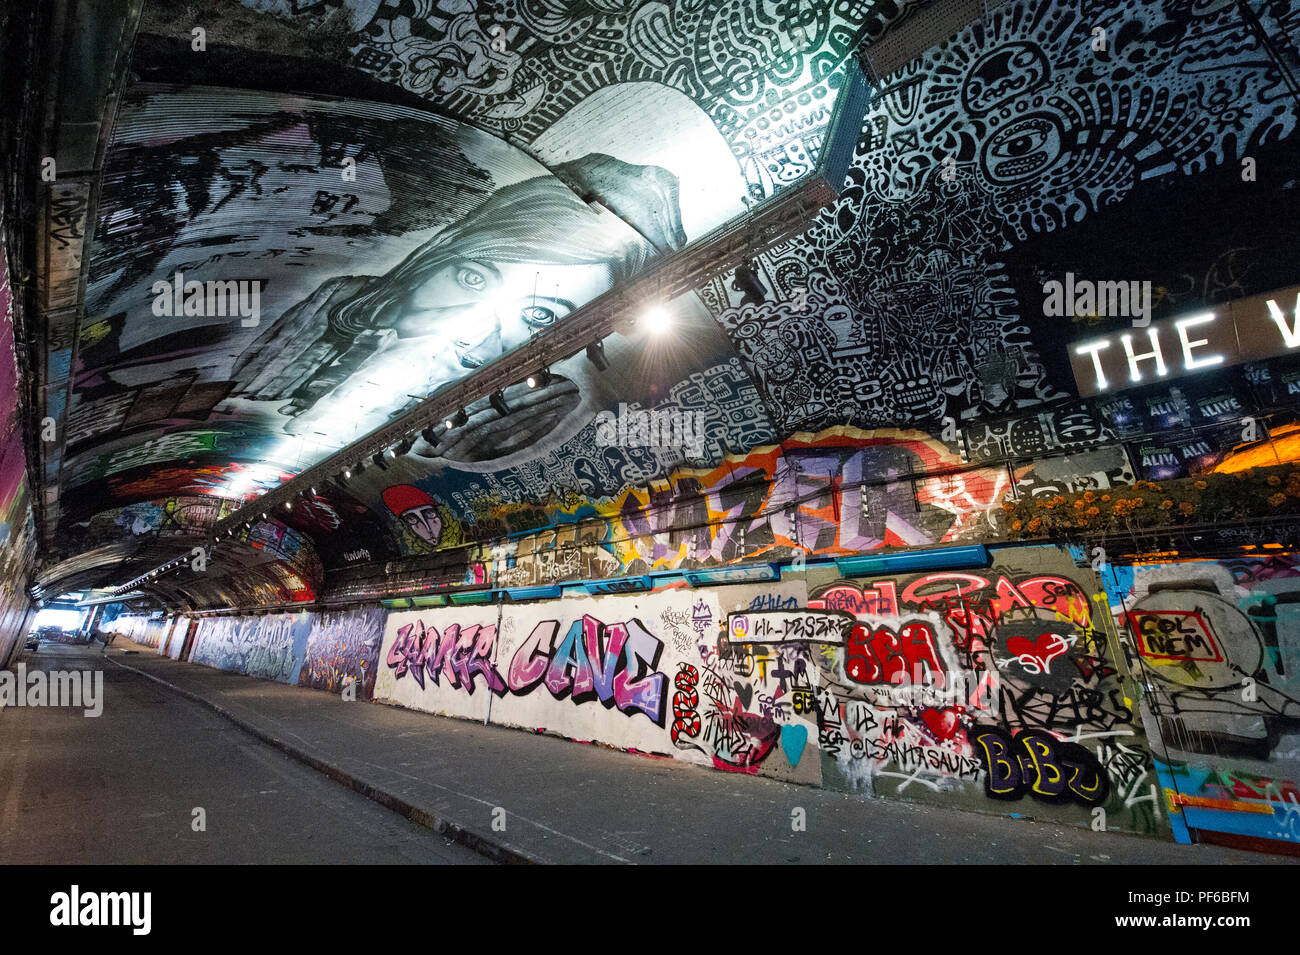 Die Wände eines Tunnels in London mit mehreren Graffitis, London, England, Großbritannien Stockfoto